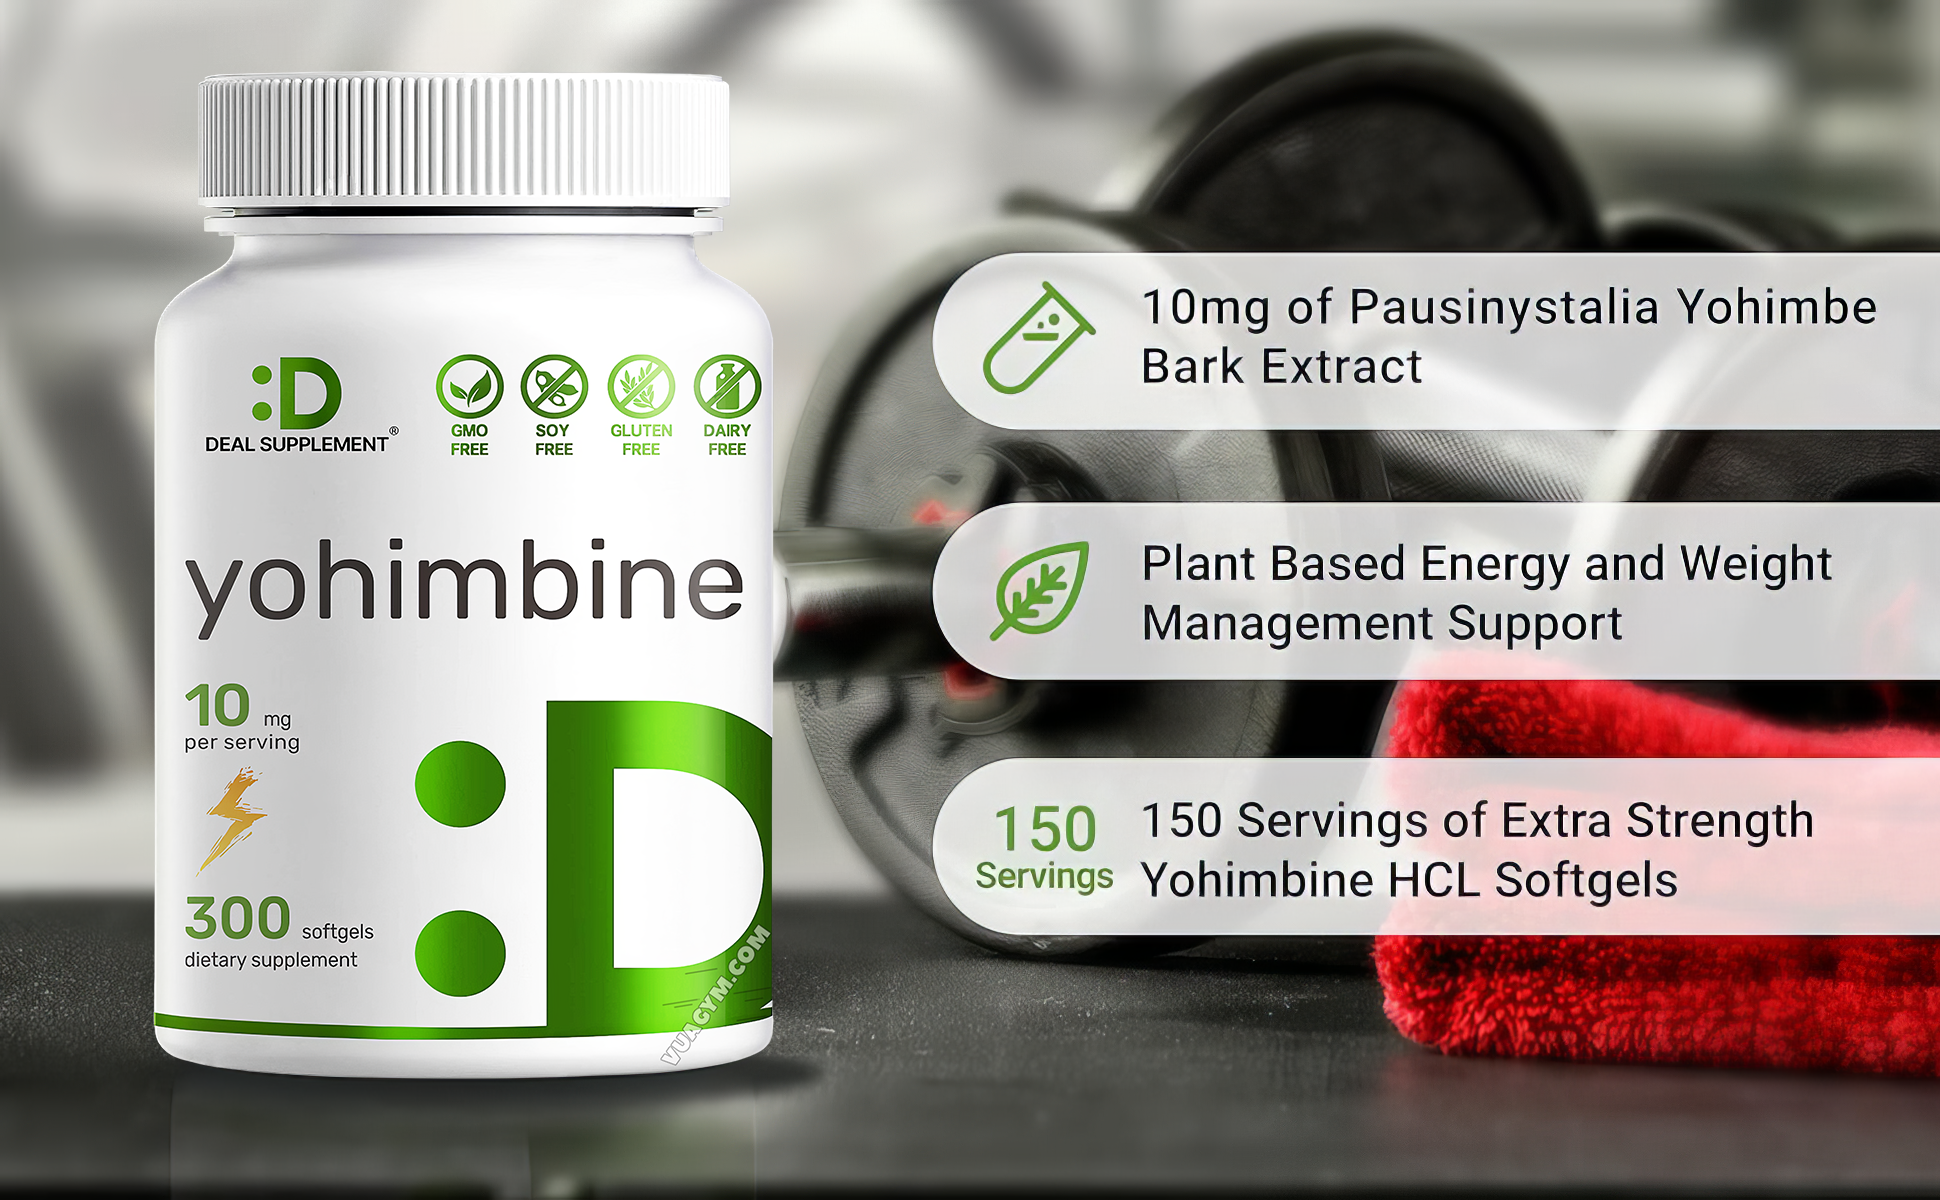 Deal Supplement - Yohimbine HCL 10mg (300 viên) - deal supplement yohimbine hcl 10mg 300 vien moatavuagym